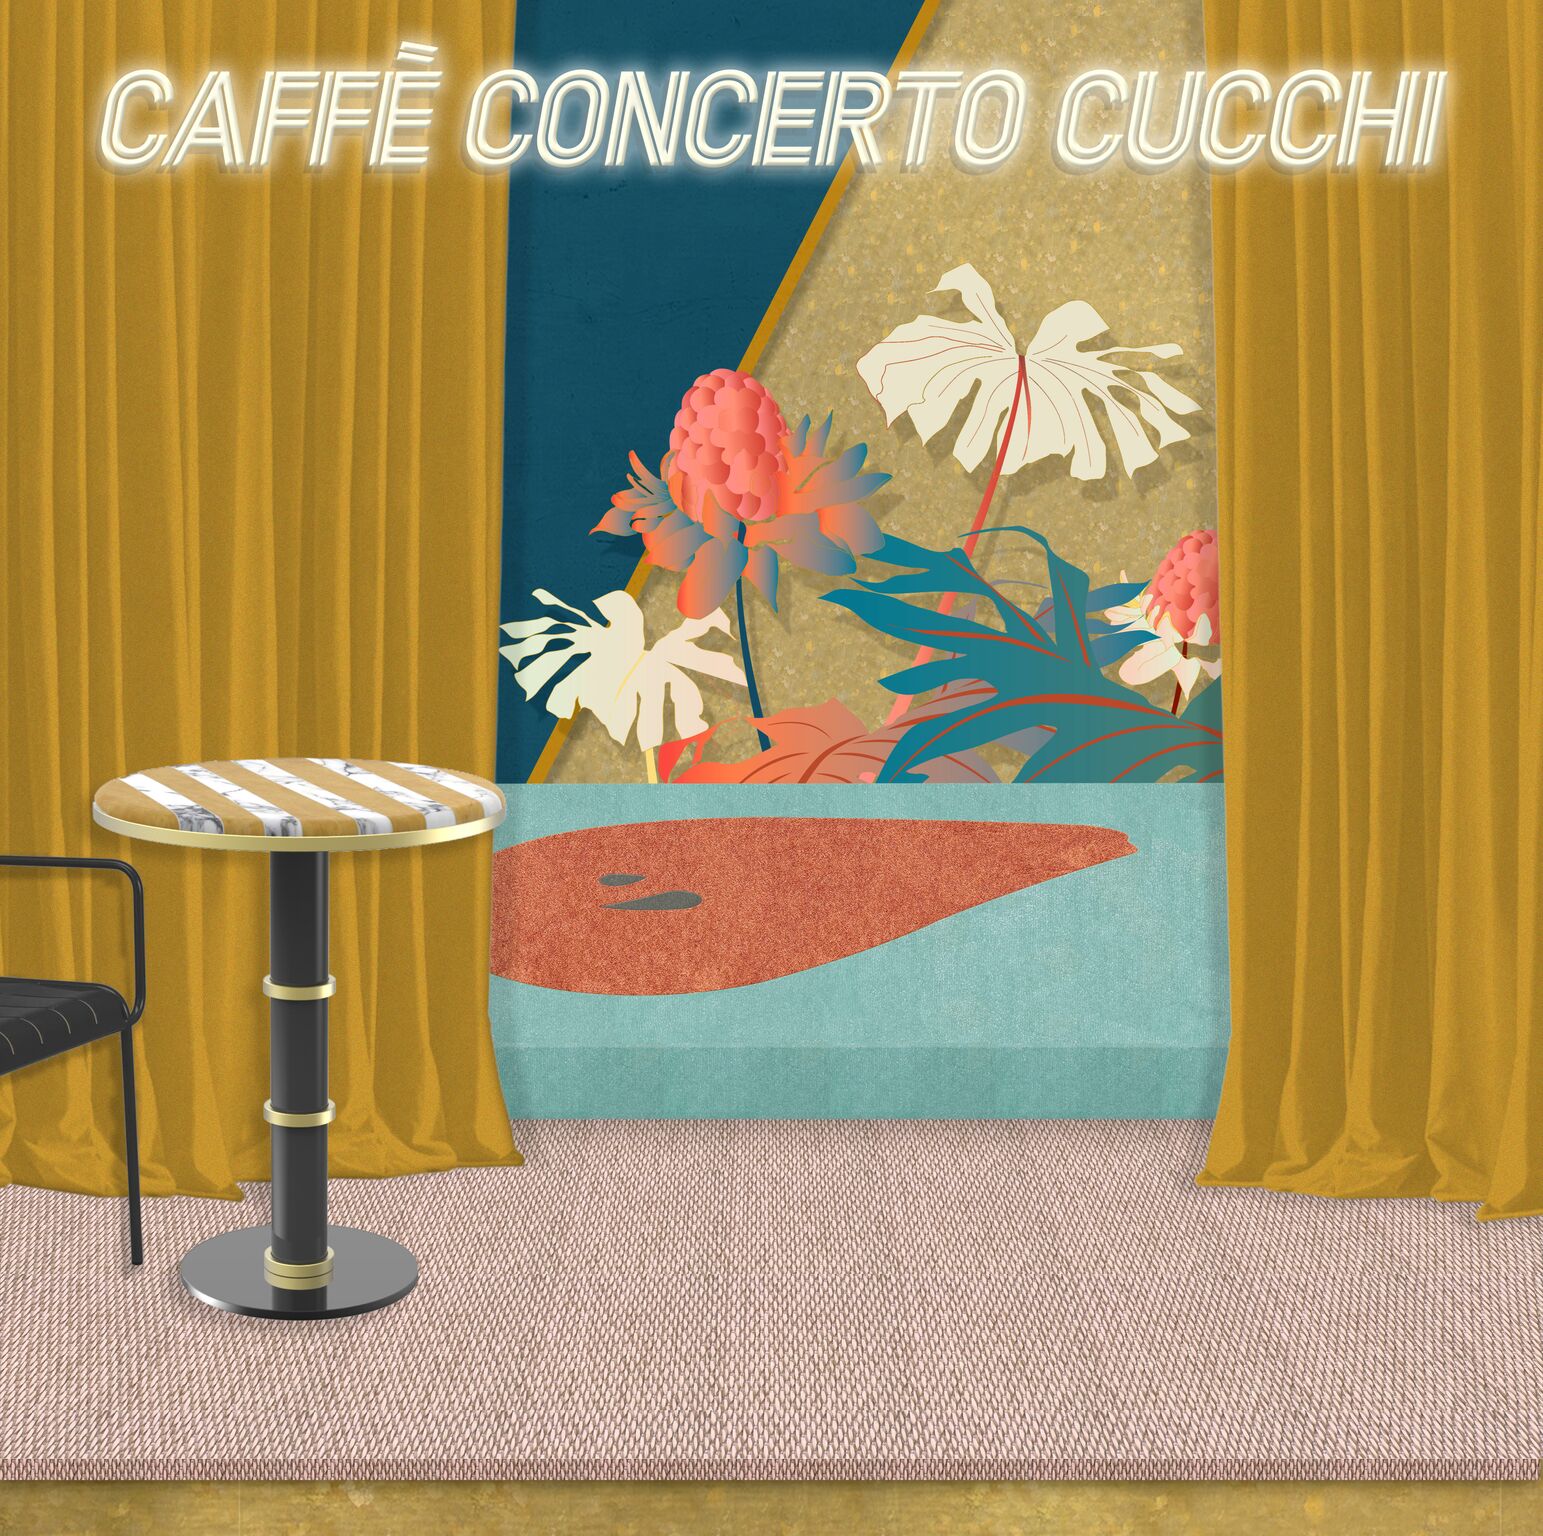 Caffè Concerto Cucchi La locandina del progetto